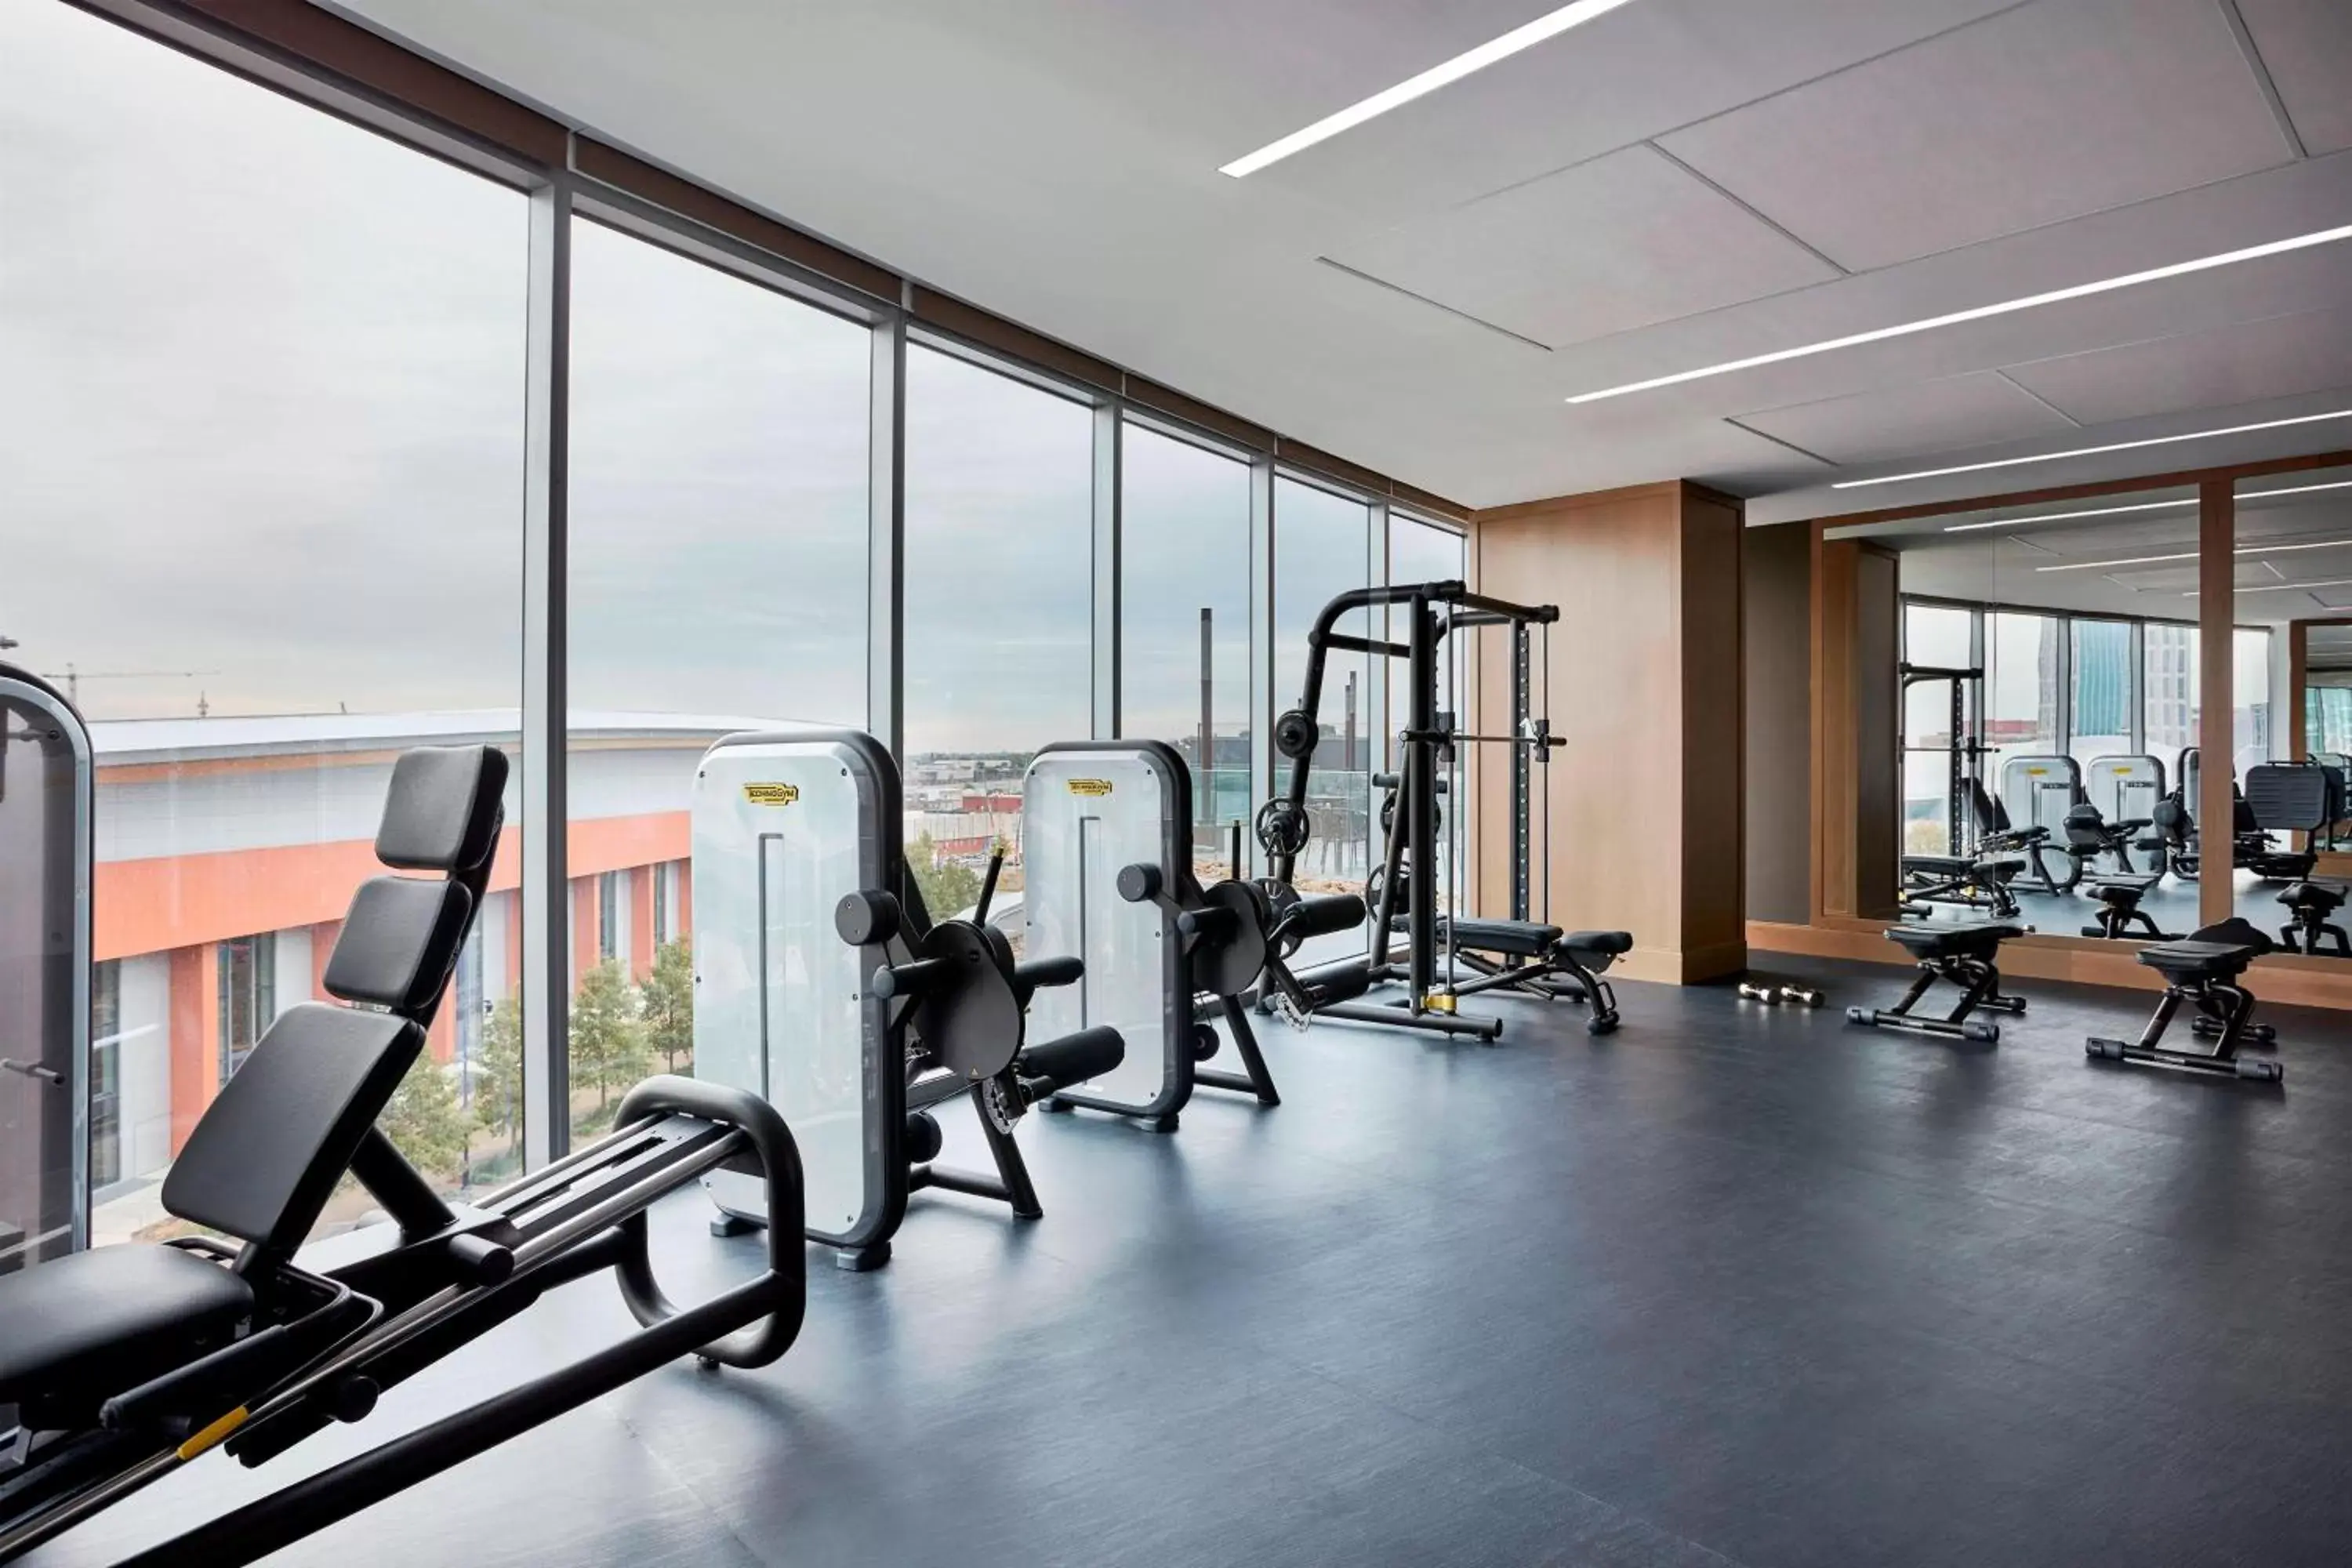 Fitness centre/facilities, Fitness Center/Facilities in JW Marriott Nashville